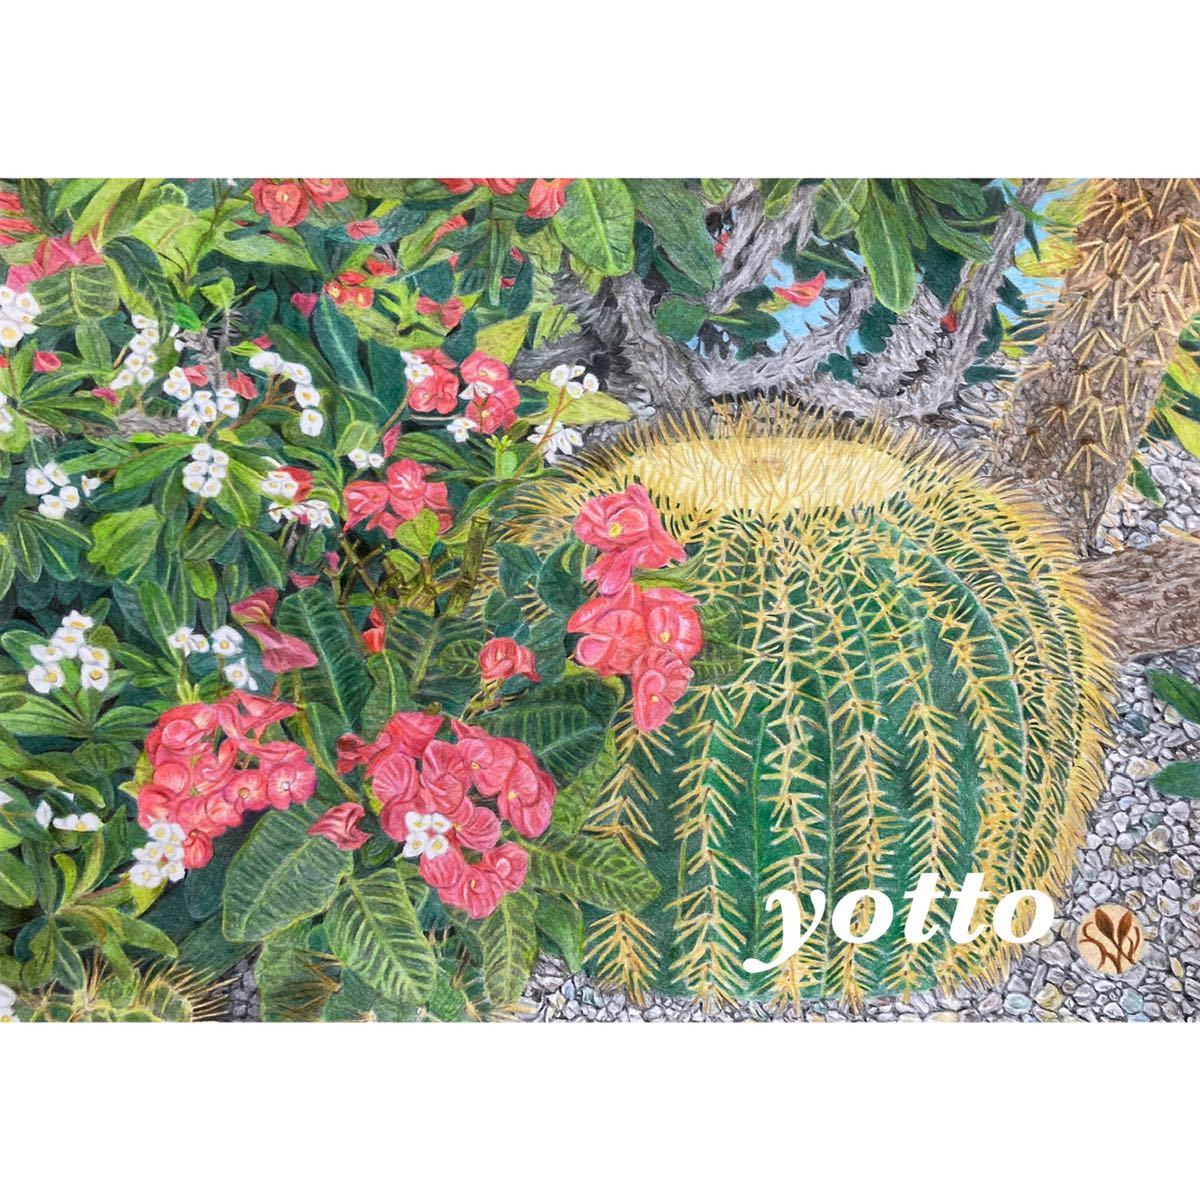 Dibujo a lápiz de colores Cactus y Flor Kirin tamaño A4 con marco ◇ ◆ Dibujado a mano ◆ Yotto ◇, obra de arte, cuadro, dibujo a lápiz, dibujo al carbón